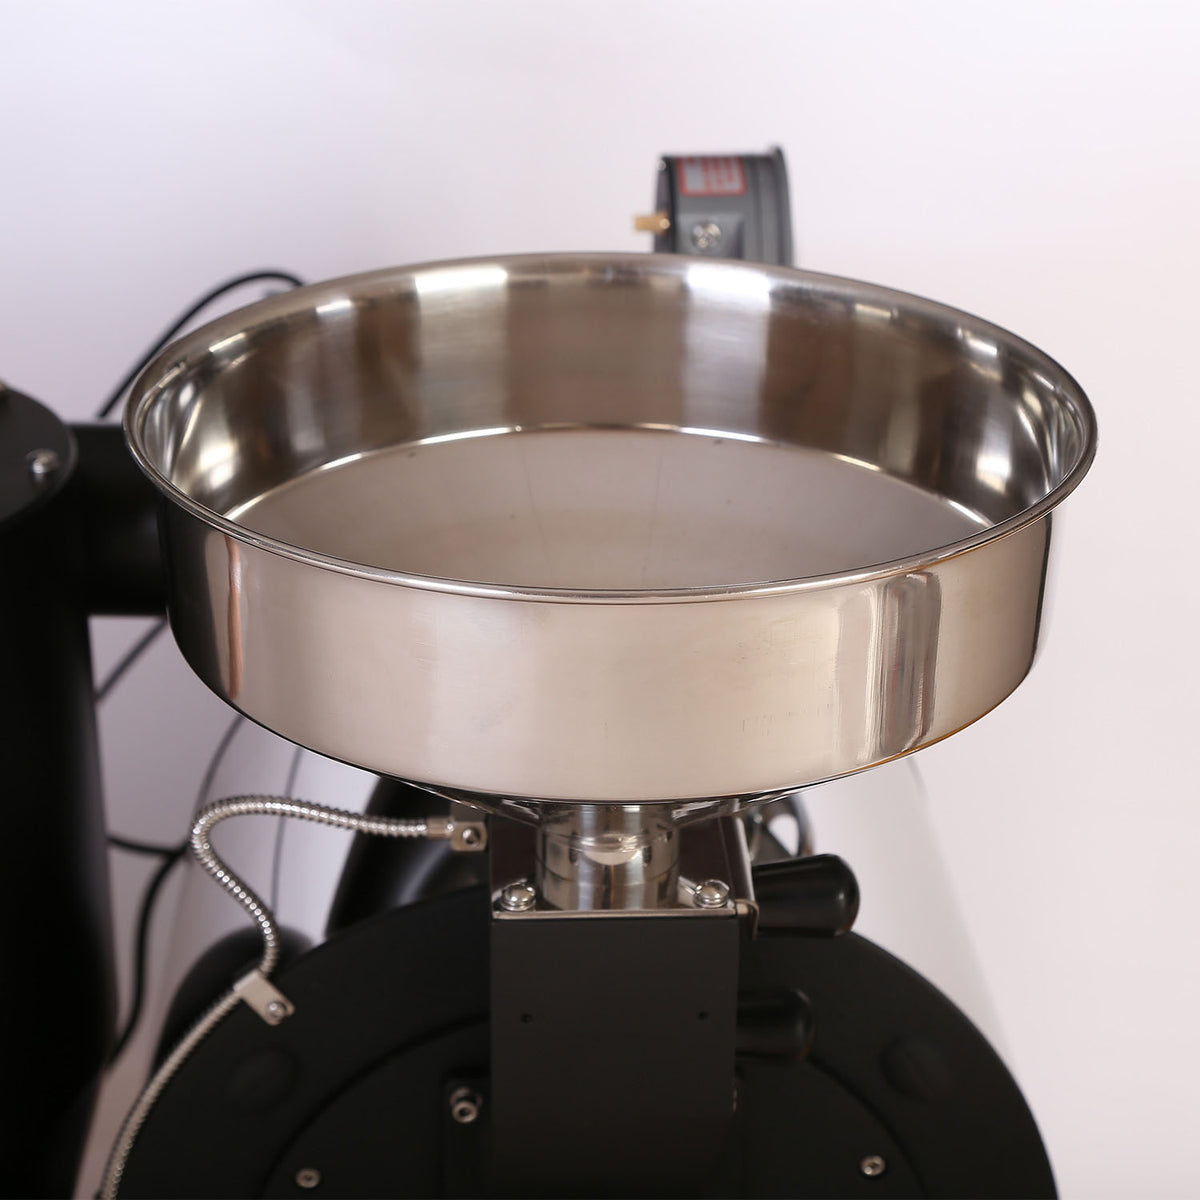 比德利1.5公斤咖啡烘焙机